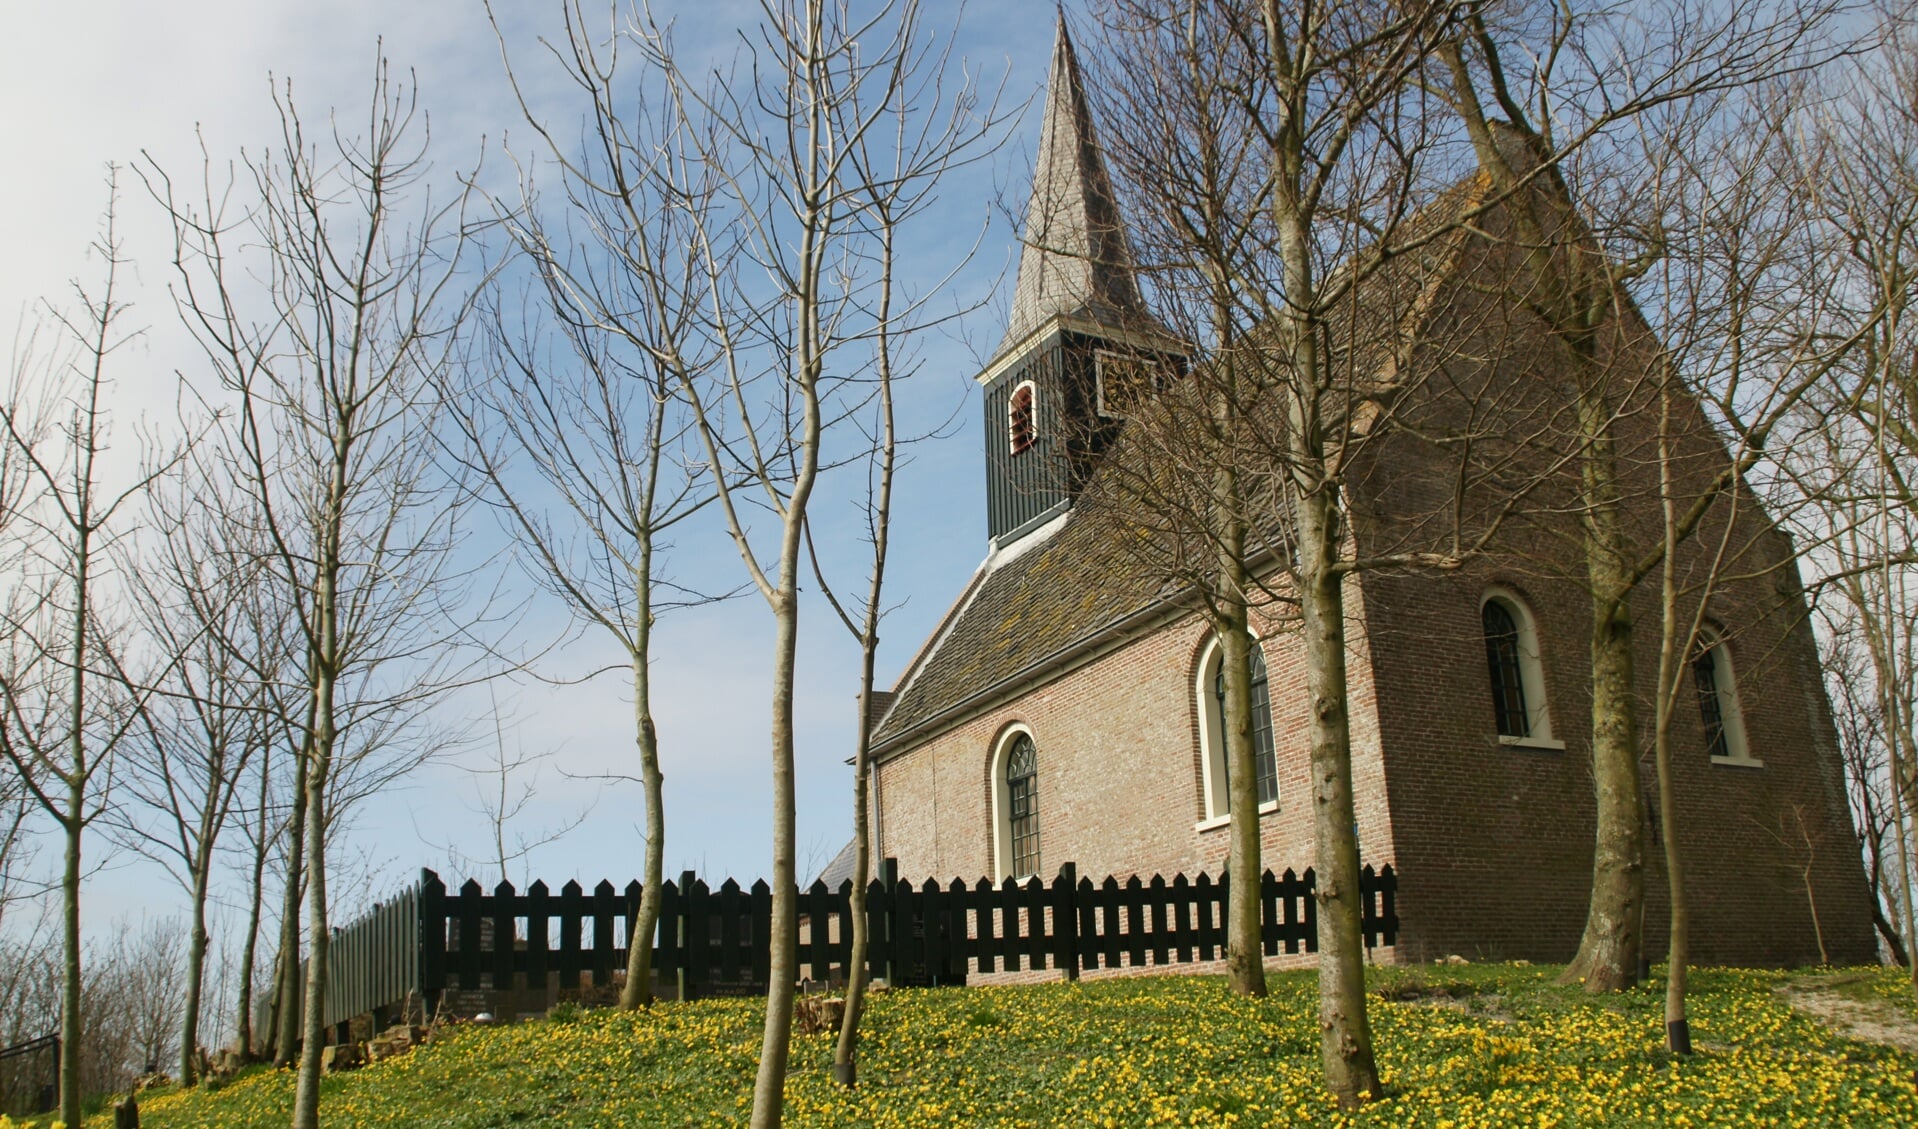 Kerkje van Eenigenburg.